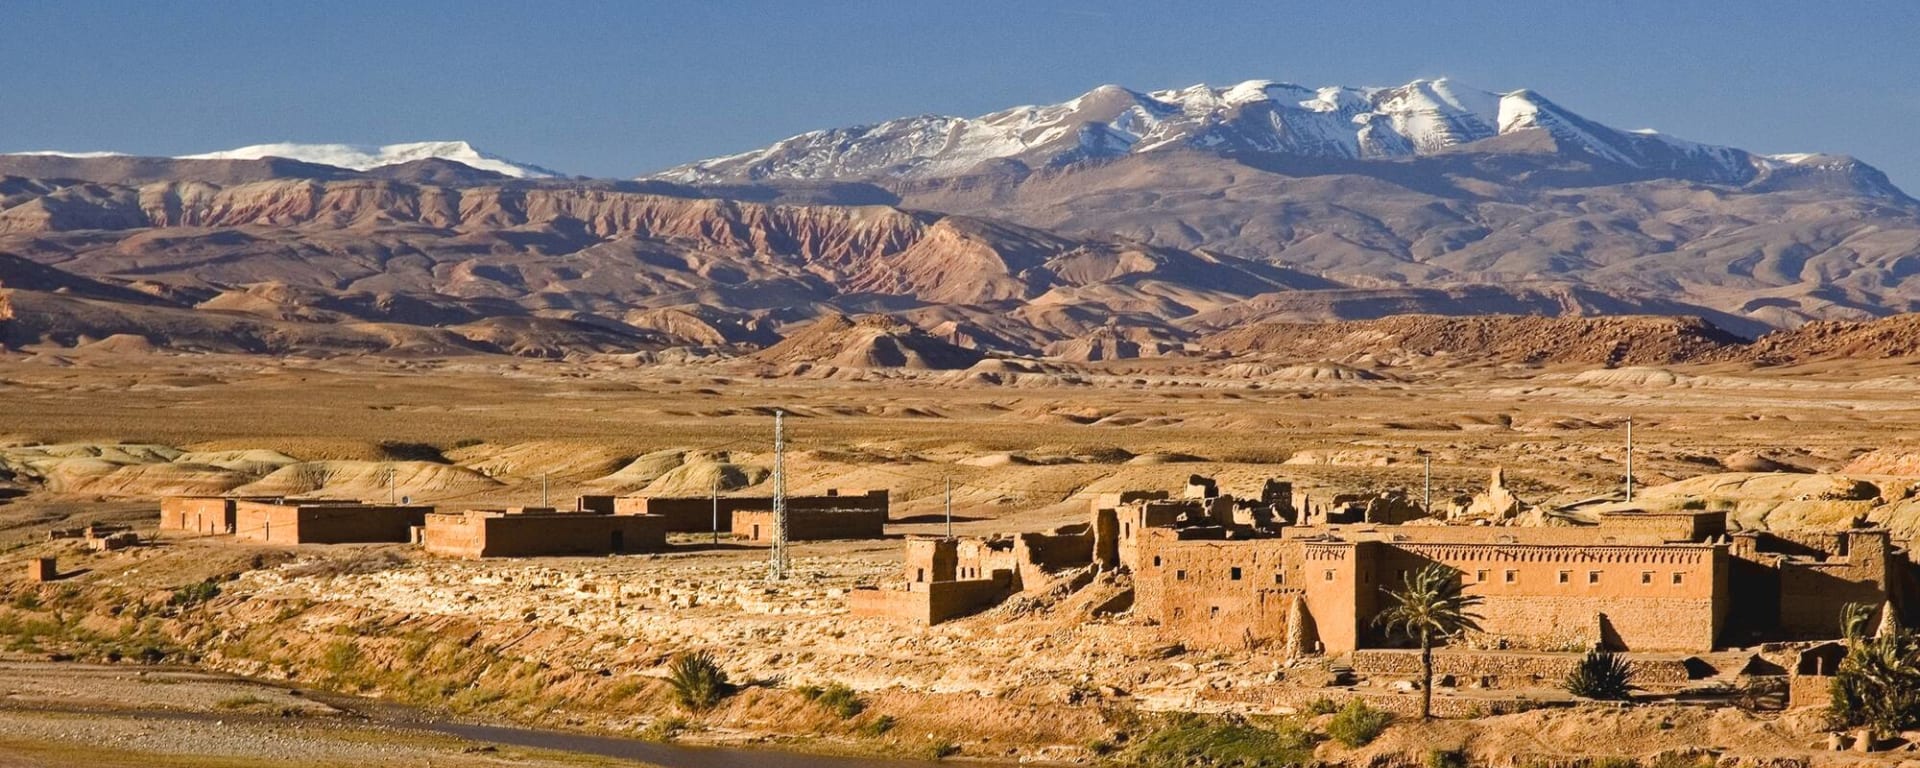 Auf den Straßen und Pisten des Königreichs ab Marrakesch: Marokko Ksar zwischen Ouarzazate und Ait Benhaddou